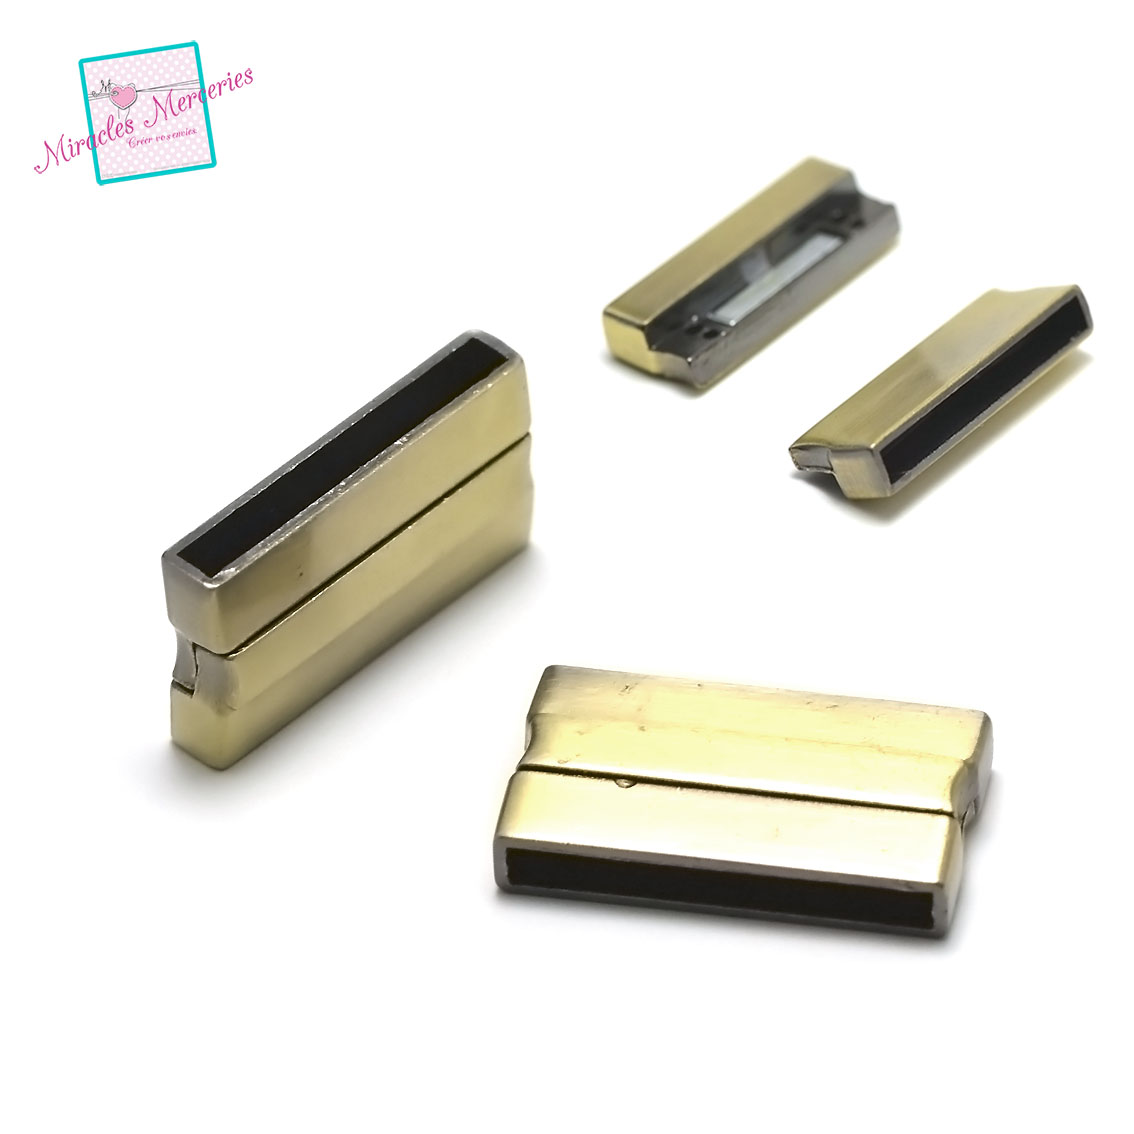 1 fermoir magnétique 32x20x6 mm ,001,bronze,pour cuir et cordon